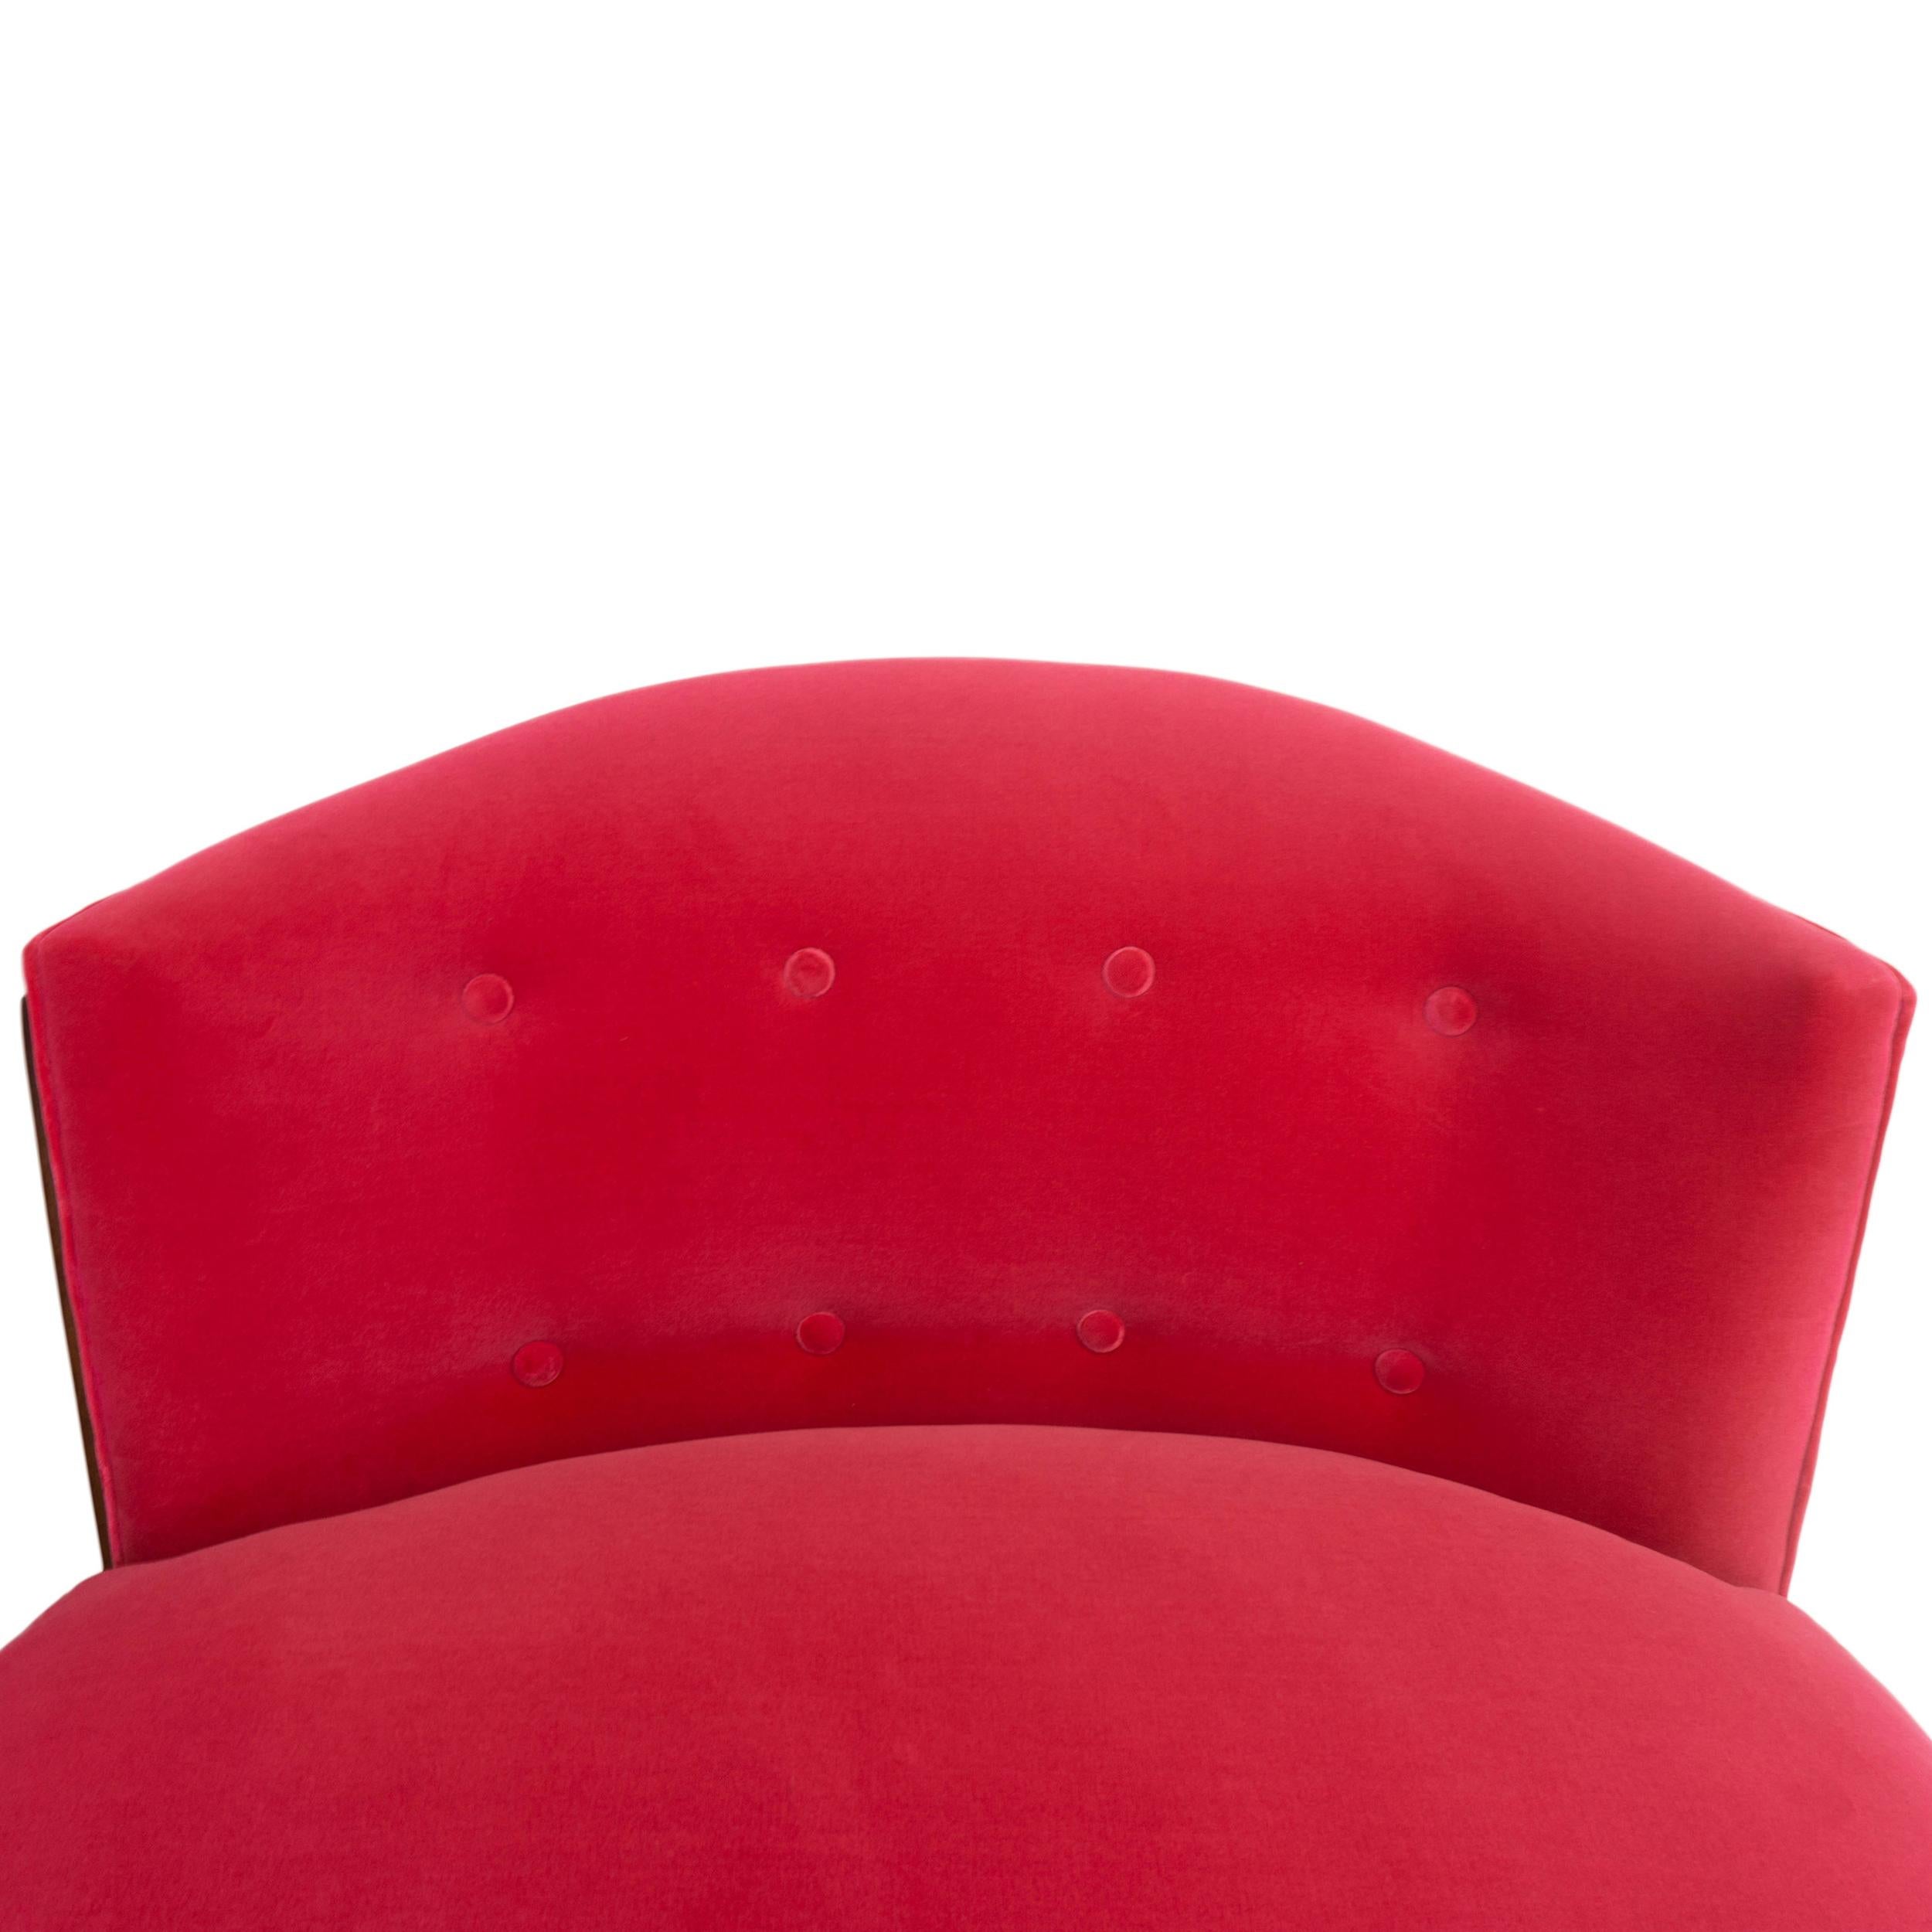 Art Deco Inspired Slipper Chair For Sale 2